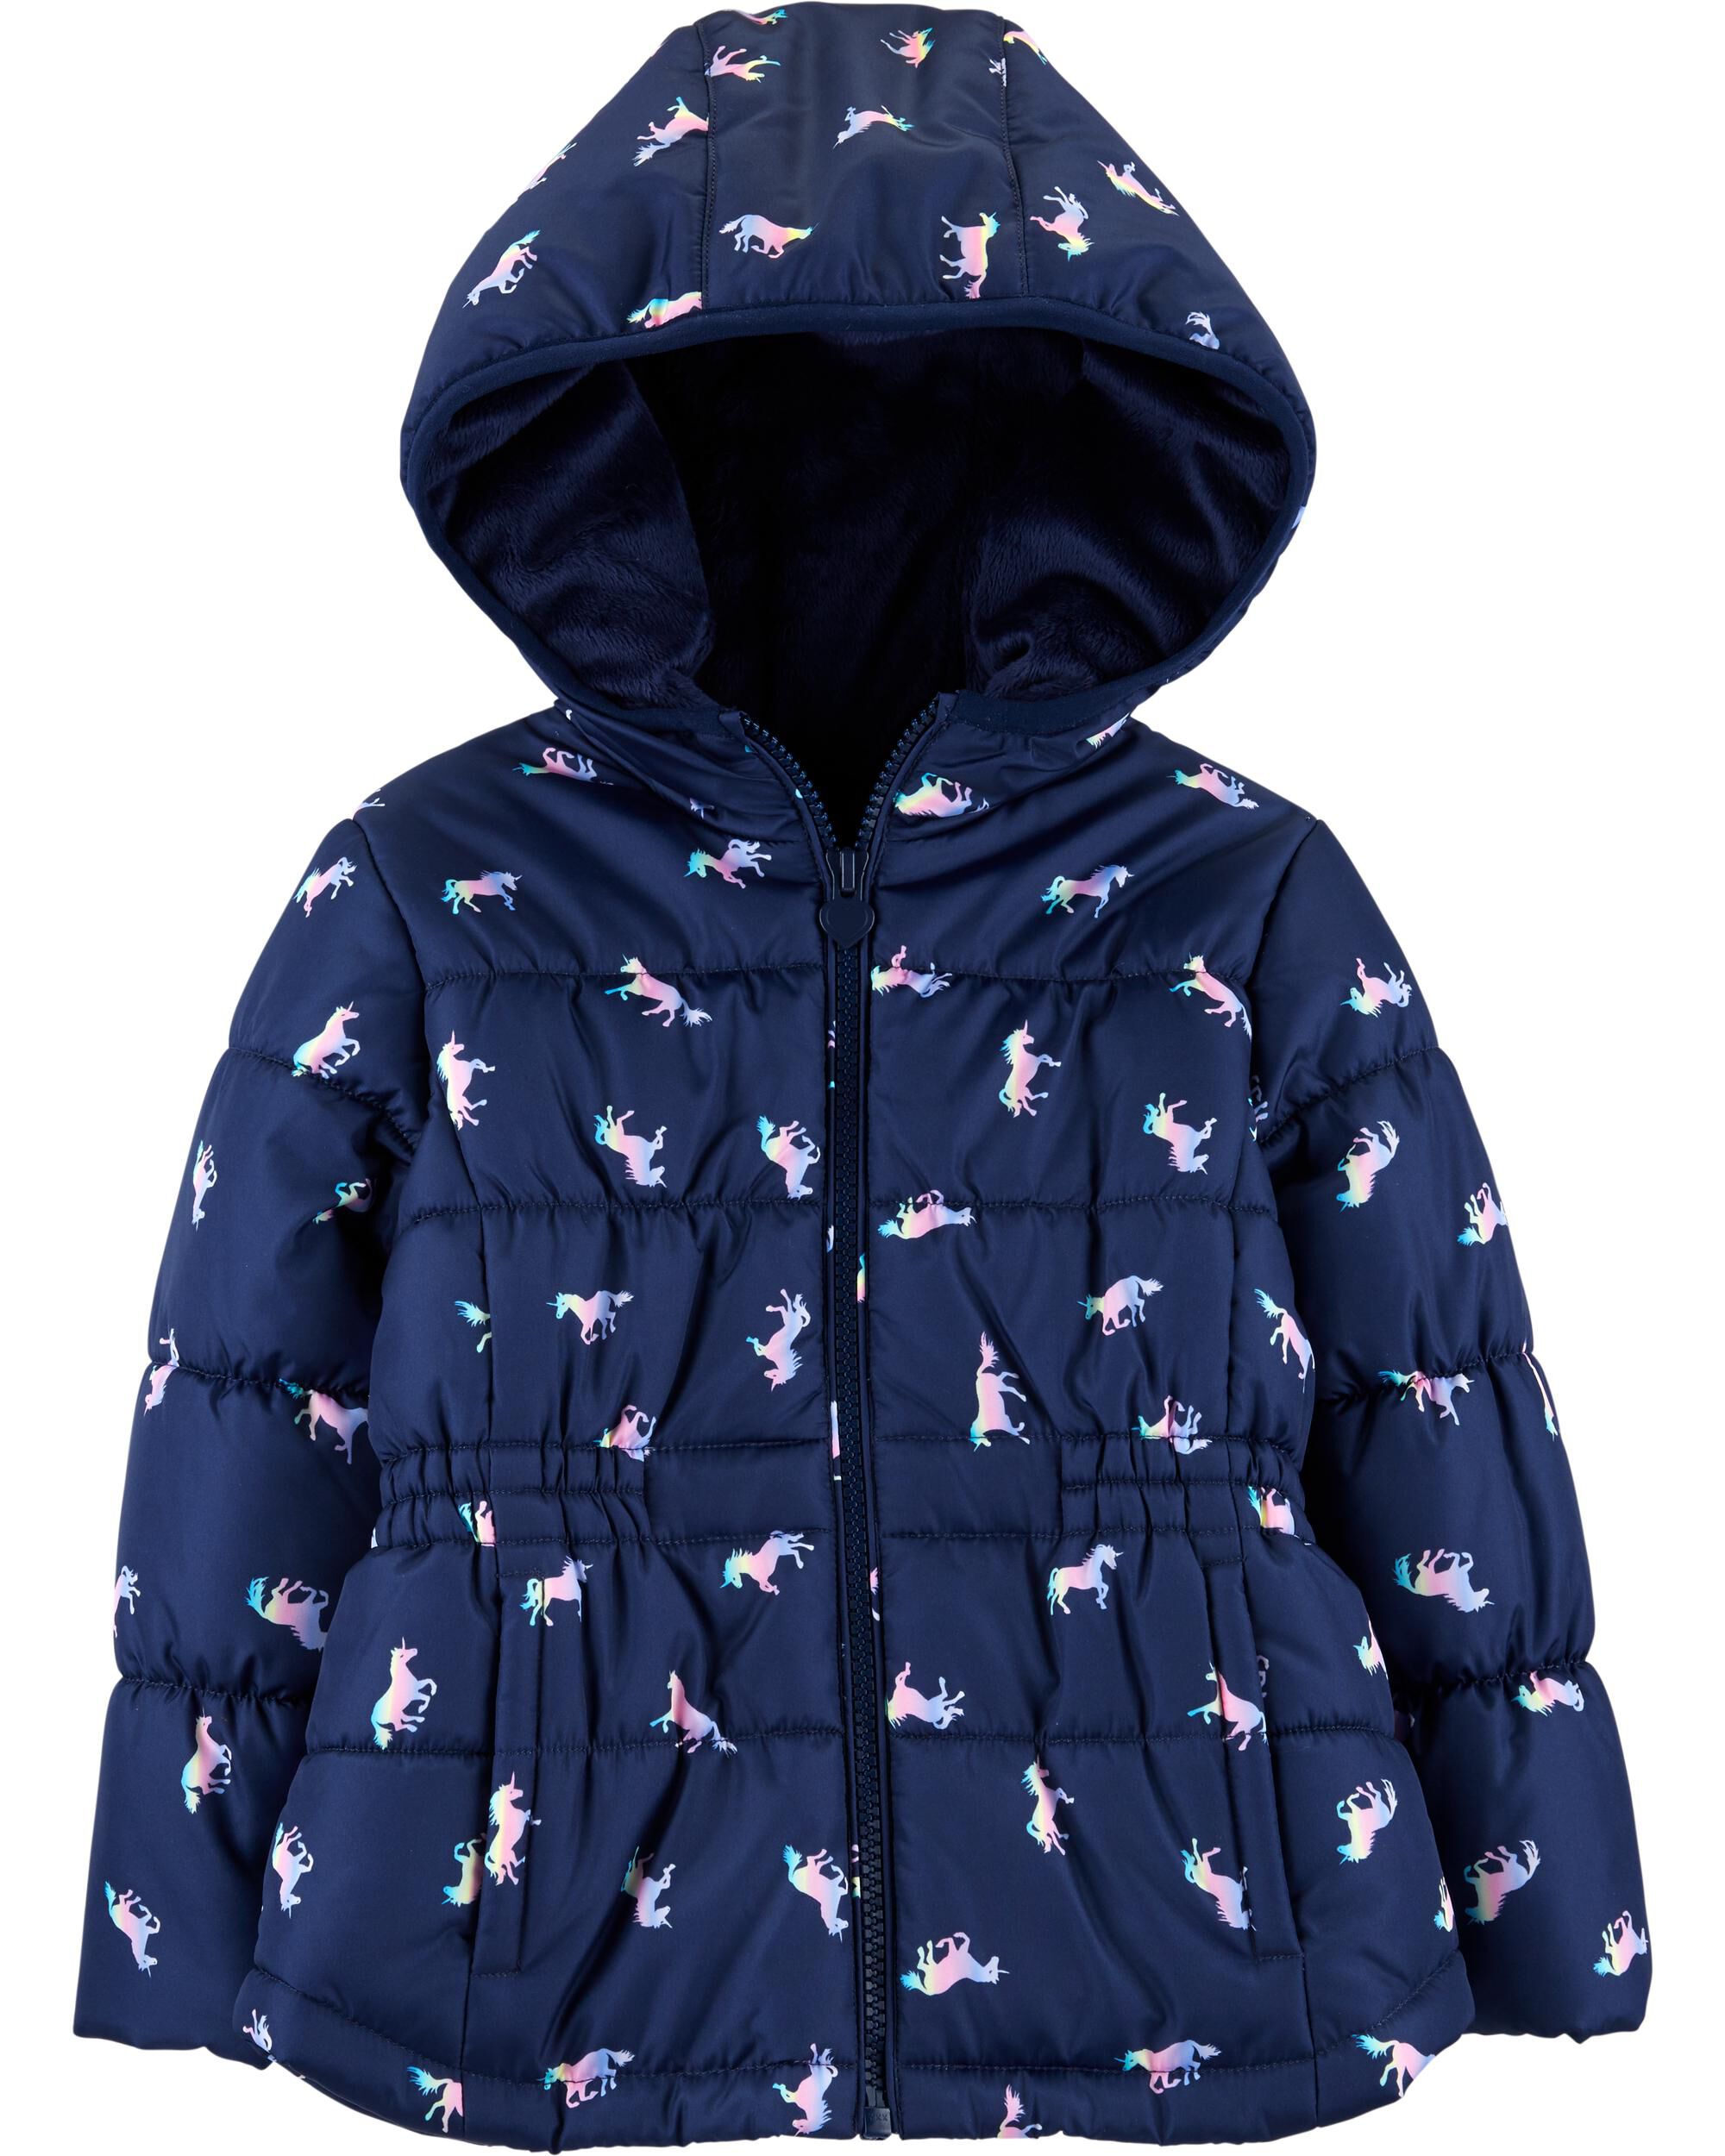 baby unicorn jacket